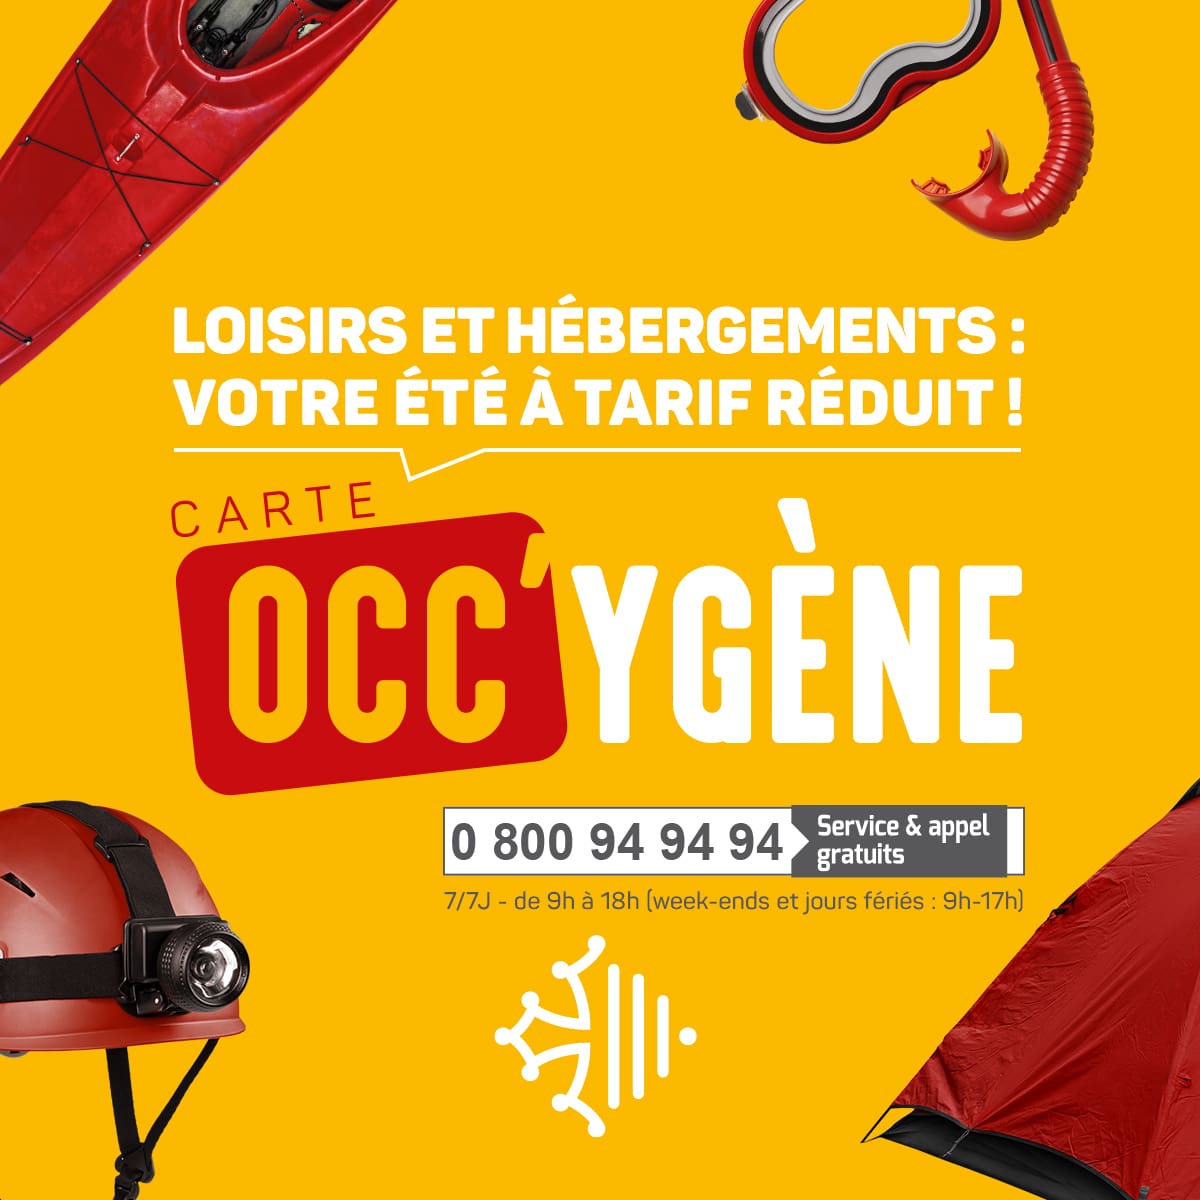 CARTE OCC'YGENE : LE PLEIN DE LOISIRS EN RéGION OCCITANIE